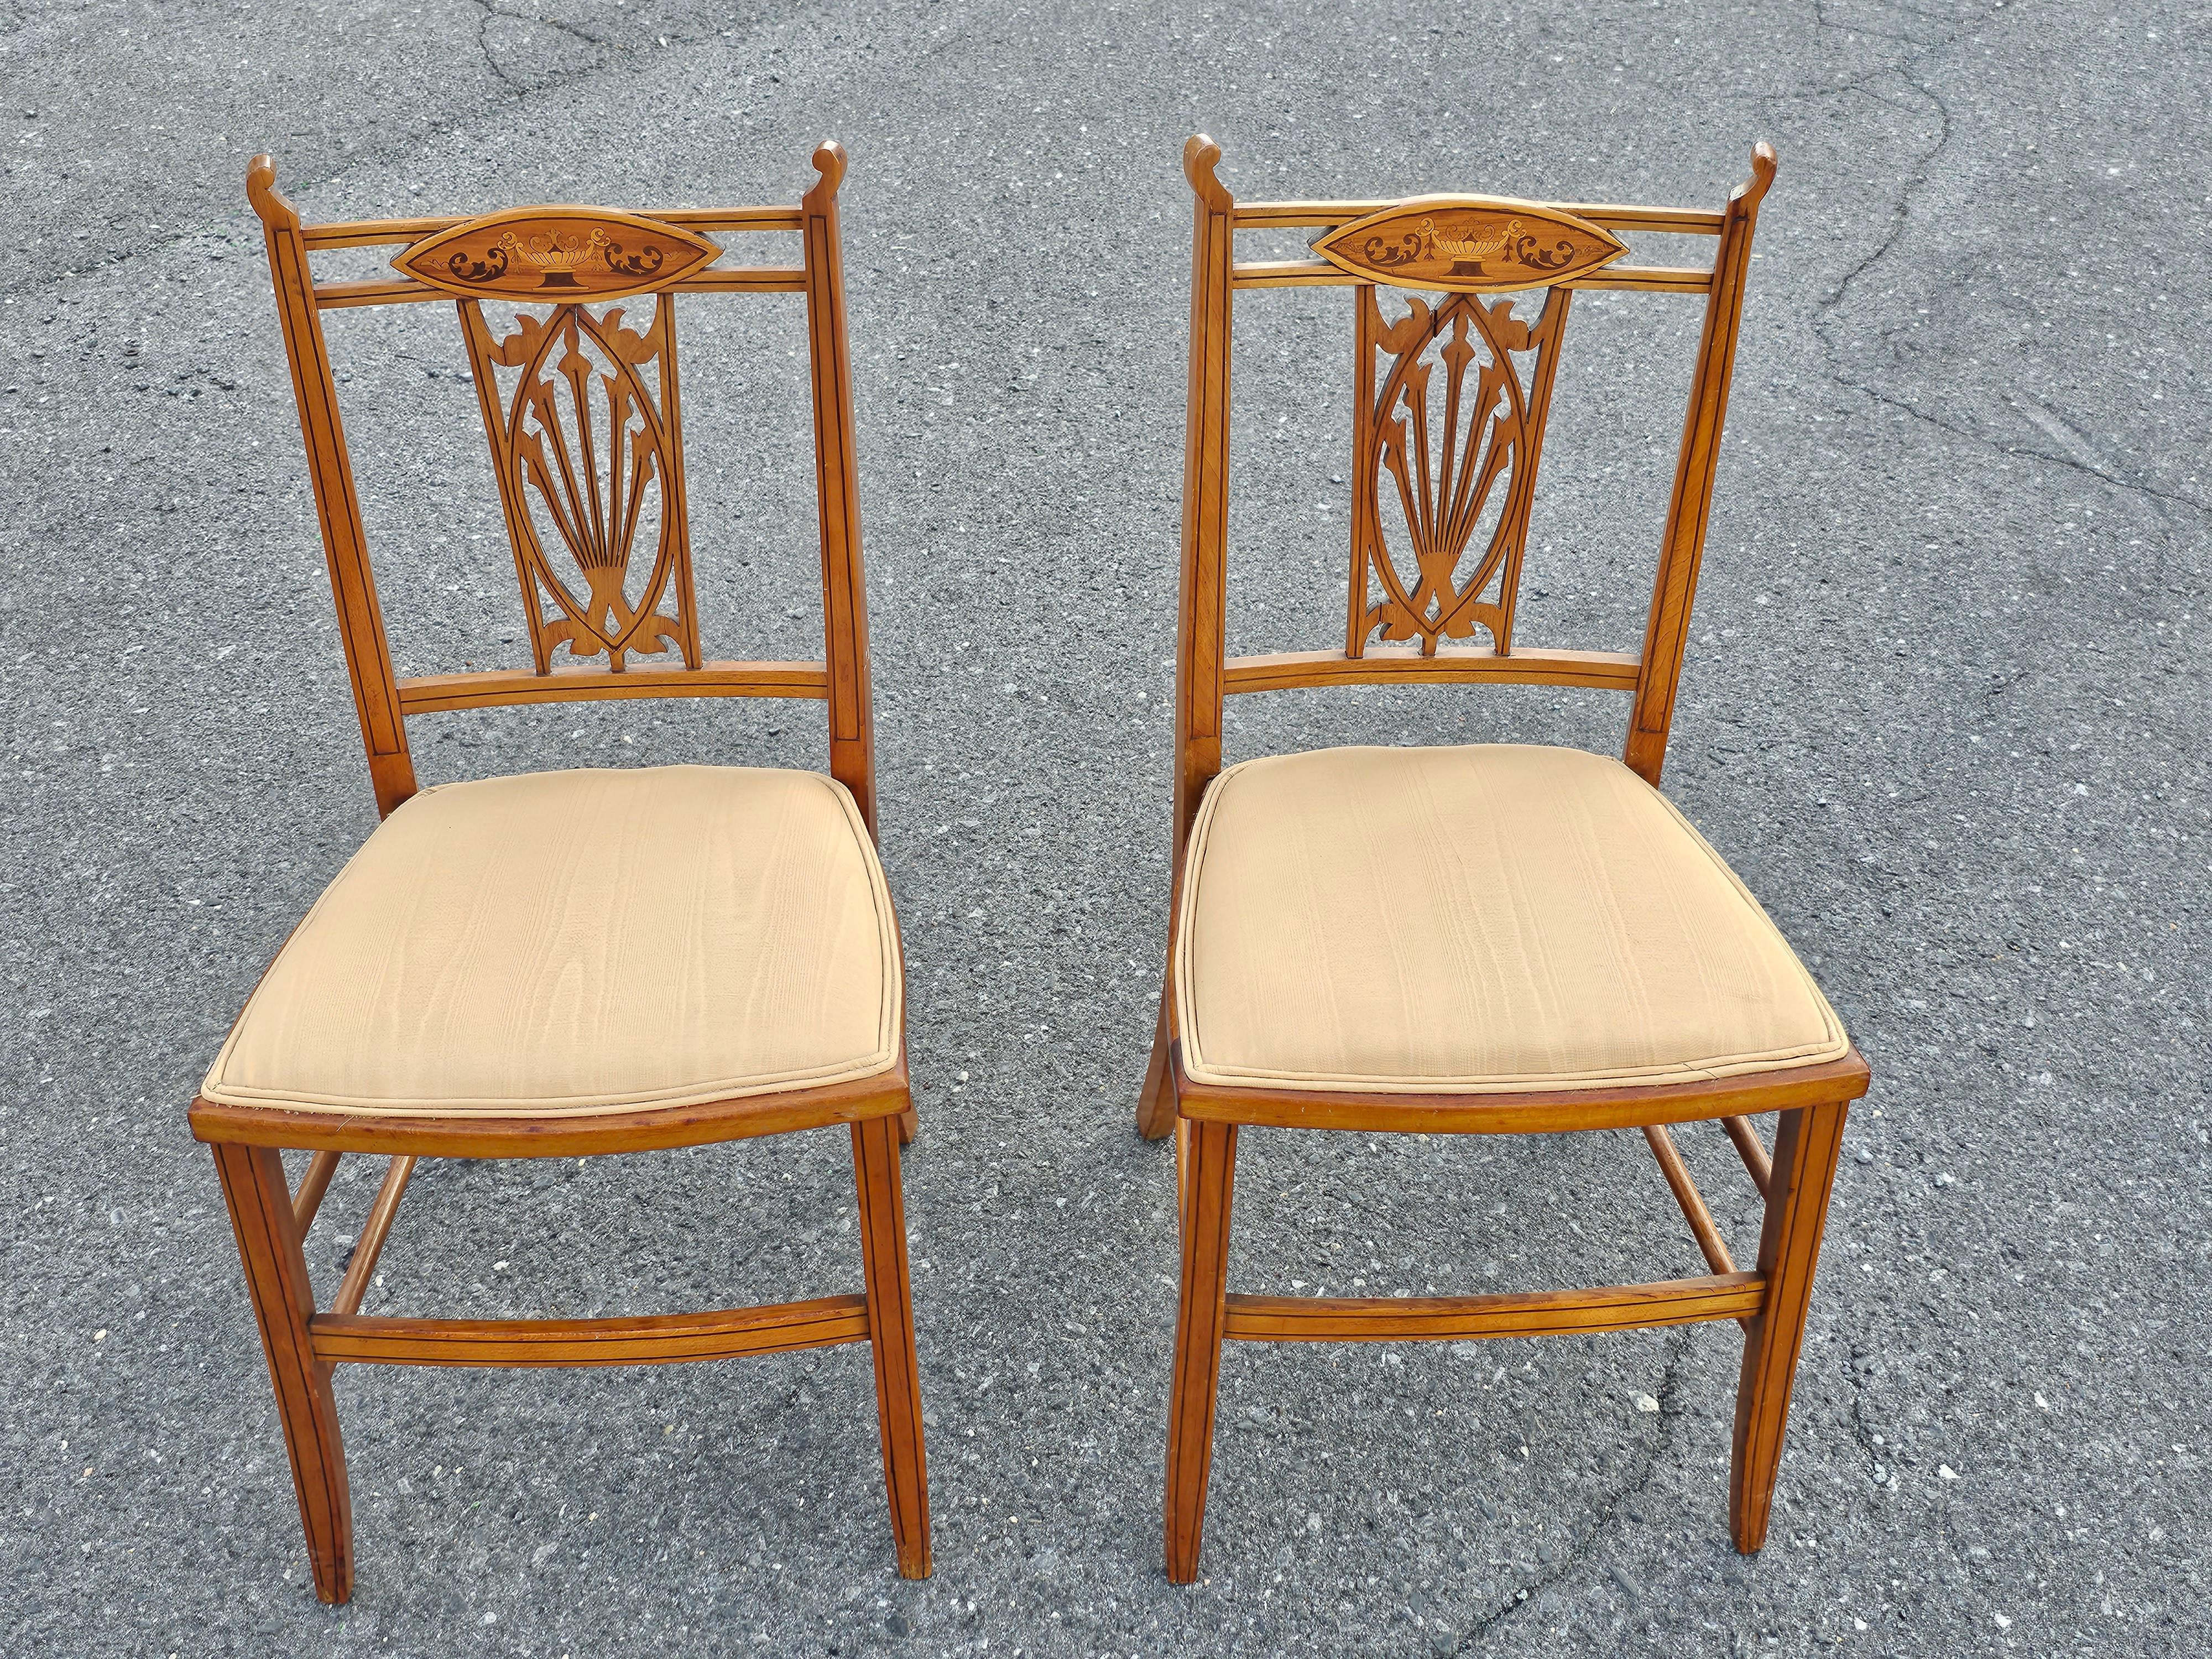 Eine Reihe von vier Edwardian Satinwood Inlaid Seite Stühle, Spiel Tisch Stühle. CIRCA Ende 19. Jahrhundert-Anfang 20. Jahrhundert. Saubere gepolsterte Sitze. Kürzlich überarbeiteter Rahmen. Sehr geringes Gewicht.